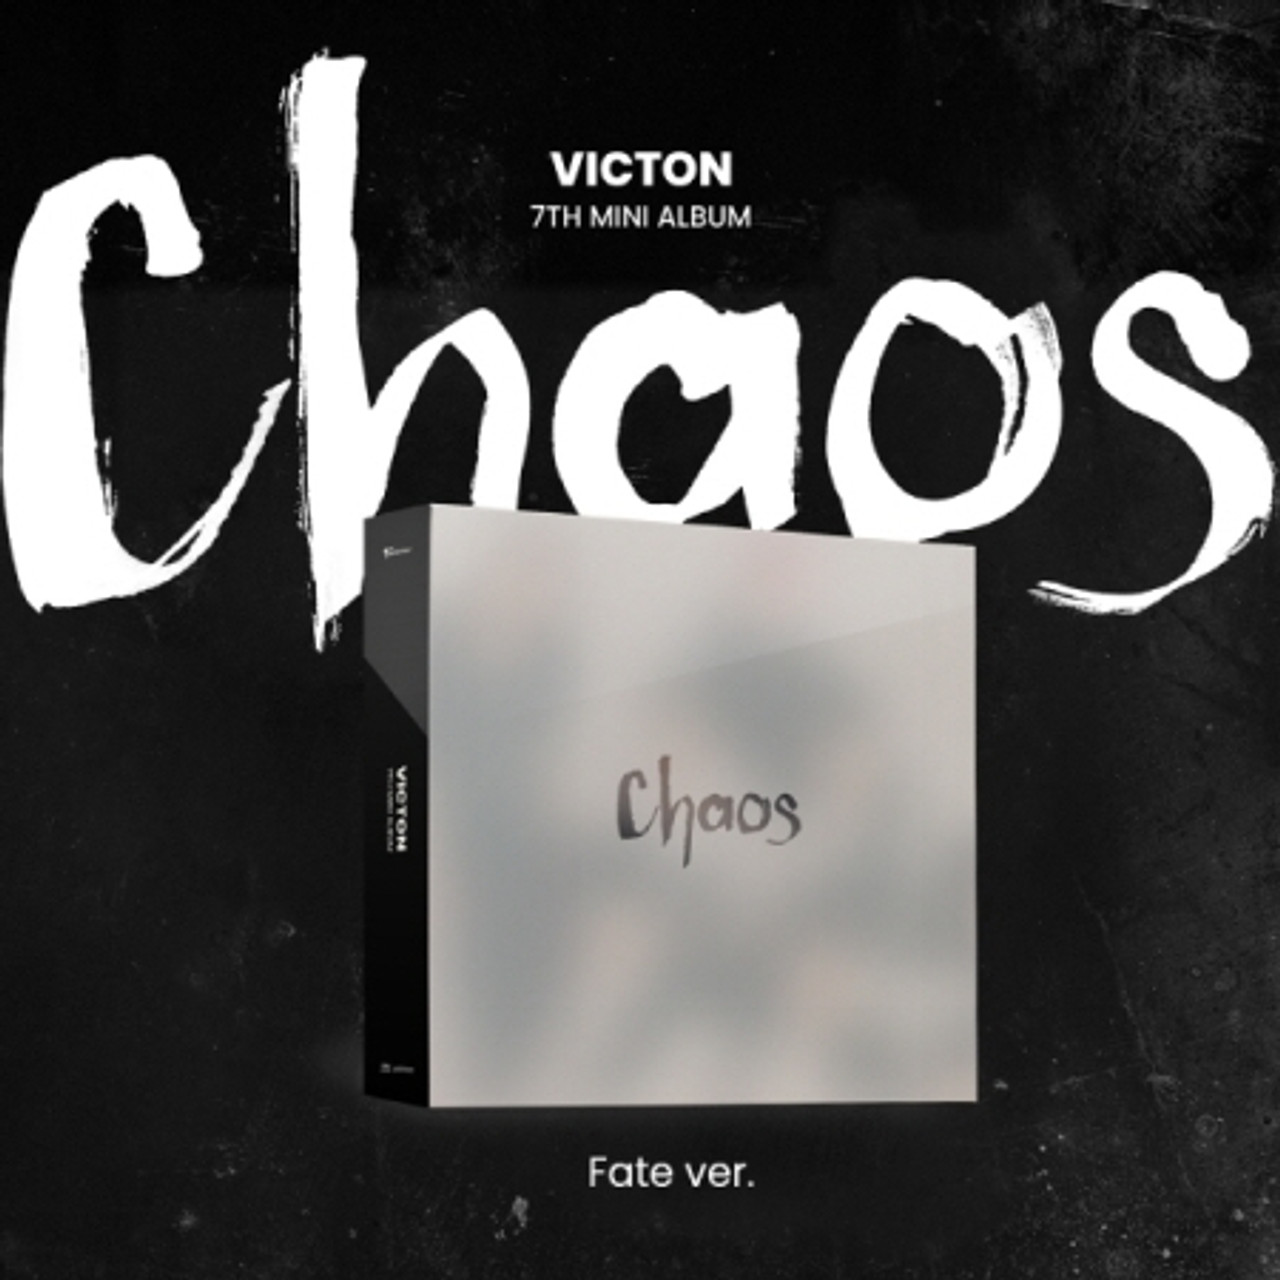 VICTON  7TH MINI   Chaos  Fate ver